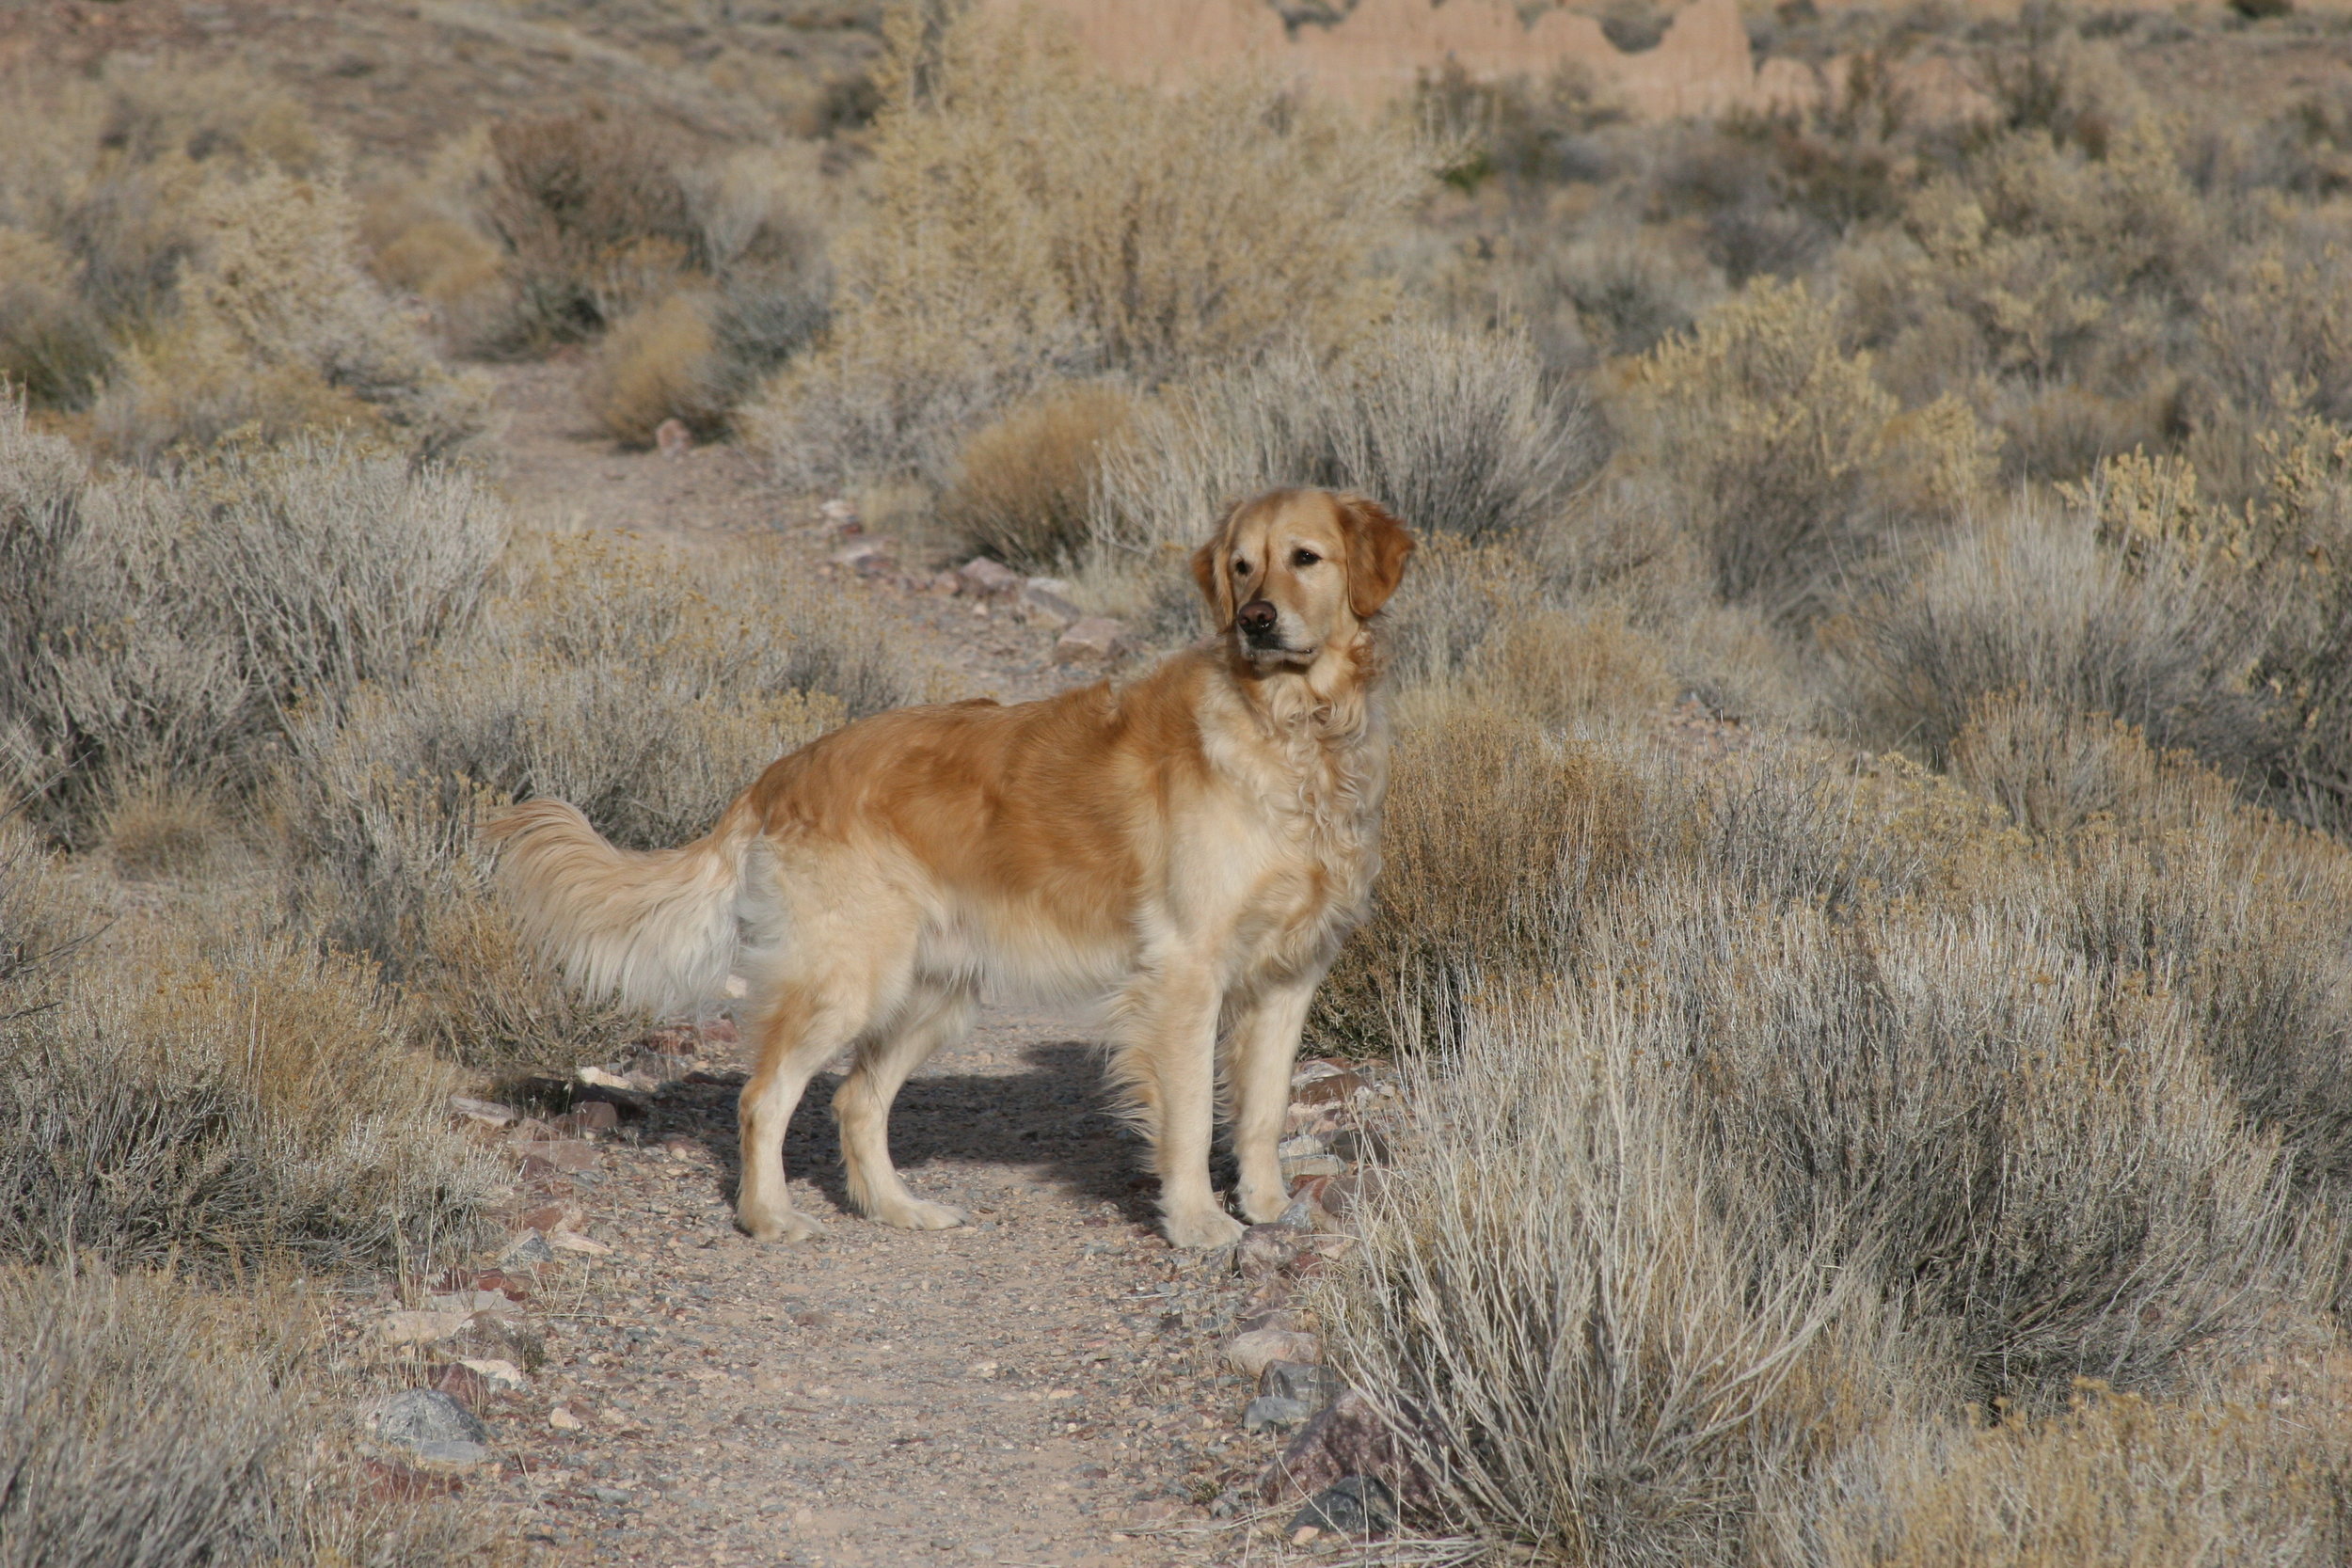 Tucker handsome in desert.jpg